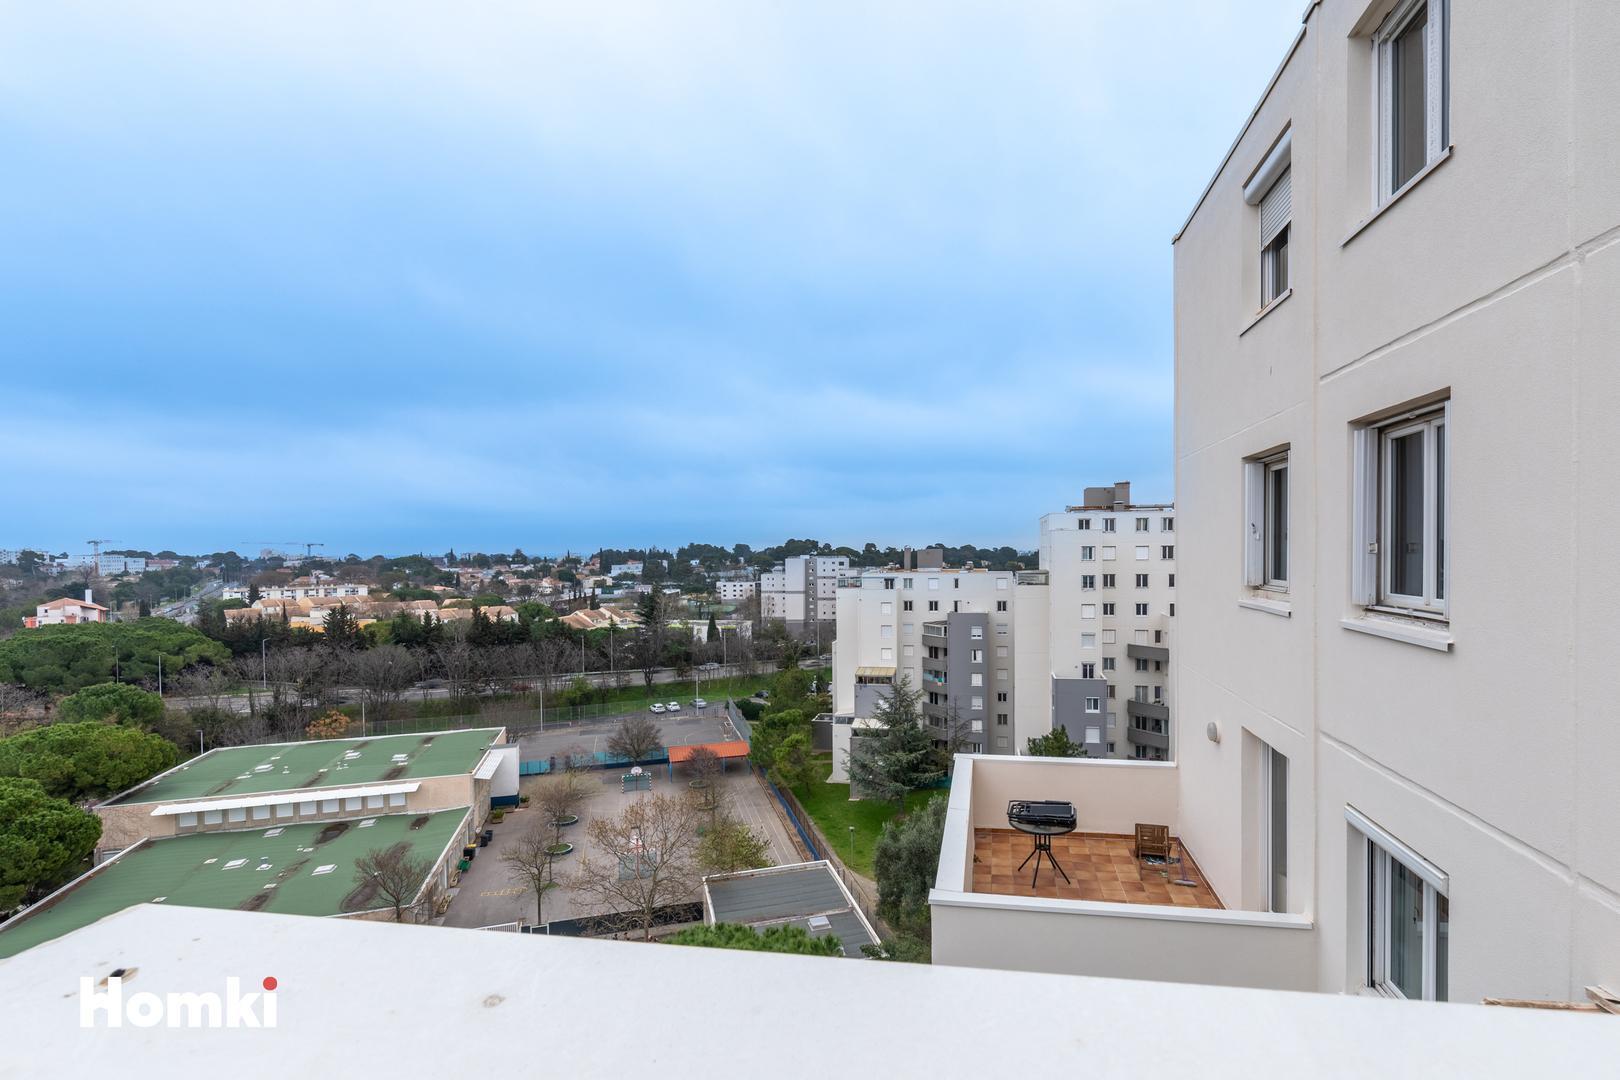 Homki - Vente Appartement  de 54.0 m² à Montpellier 34070